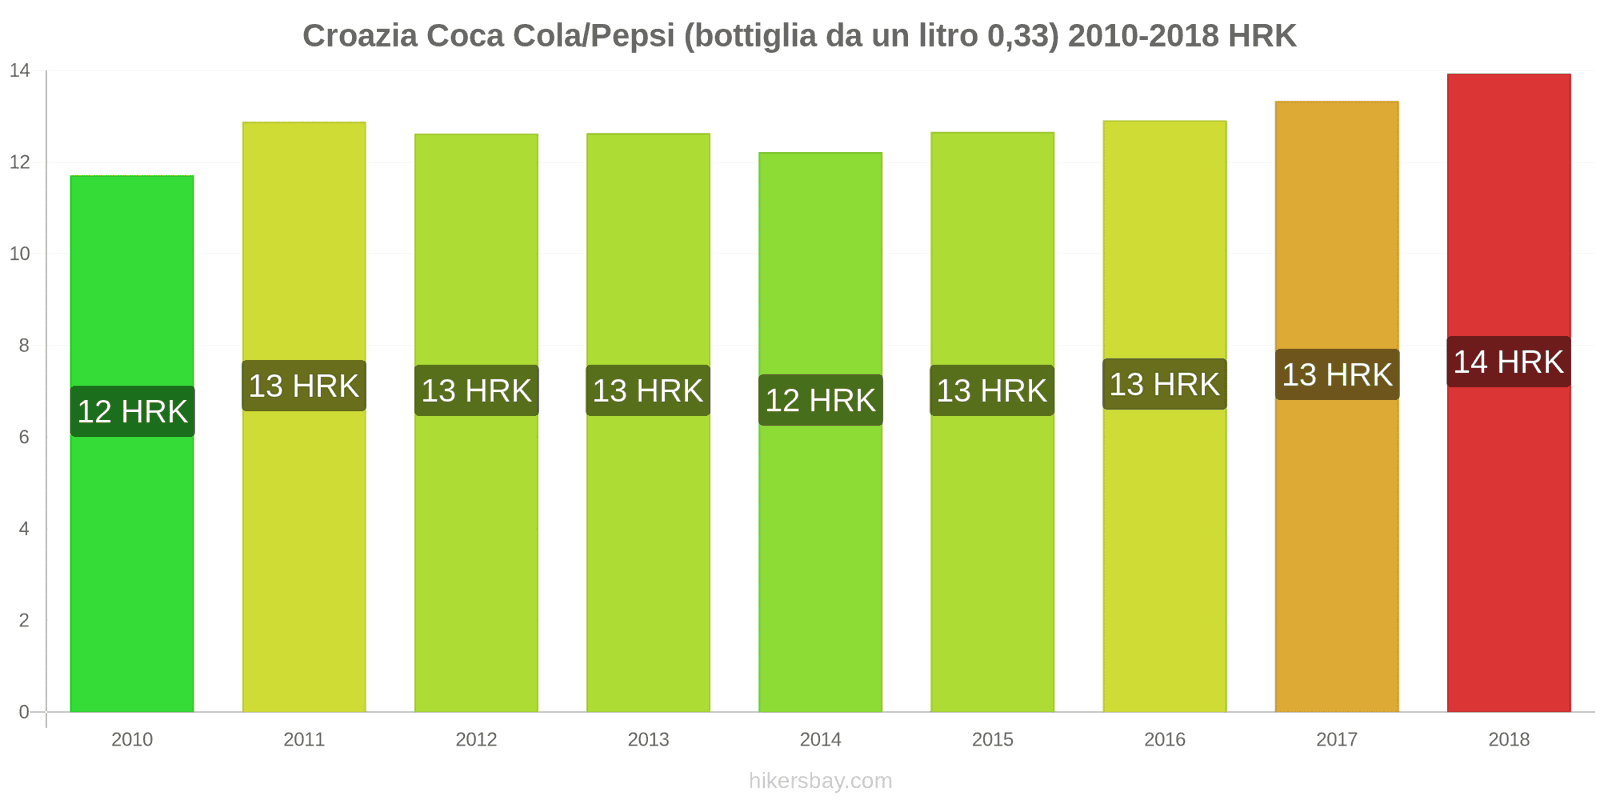 Croazia cambi di prezzo Coca-Cola/Pepsi (bottiglia da 0.33 litri) hikersbay.com